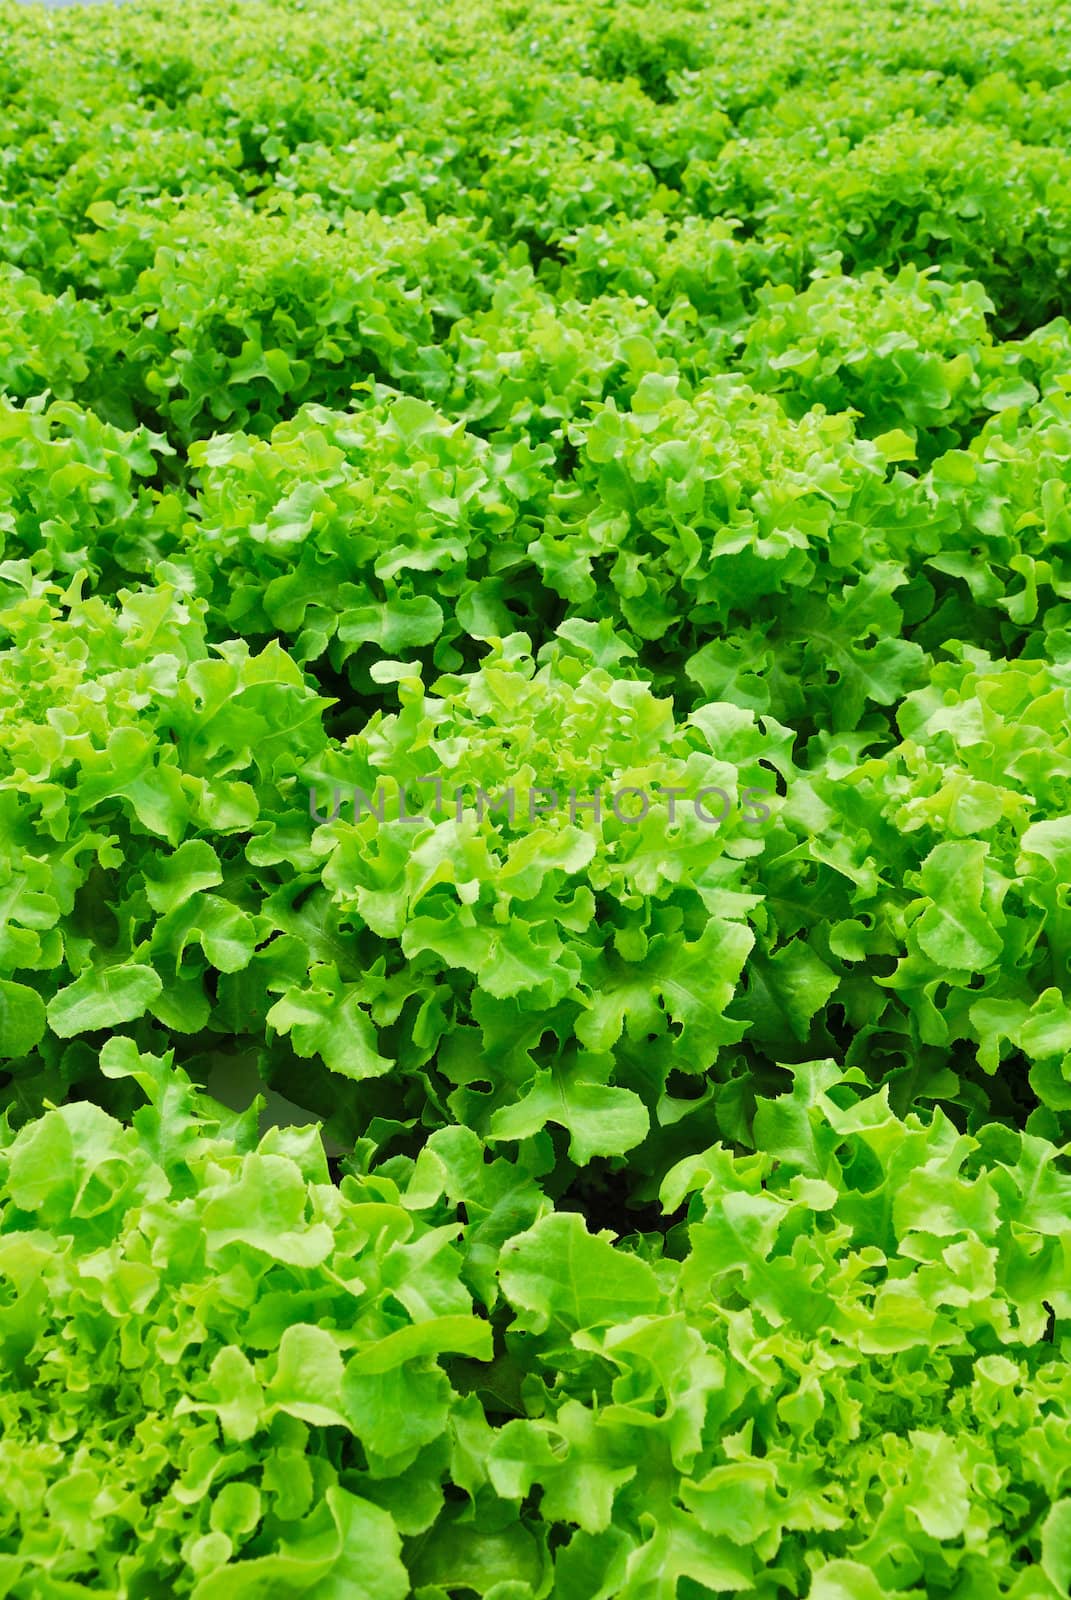 Red oak, green oak, cultivation hydroponics green vegetable in farm